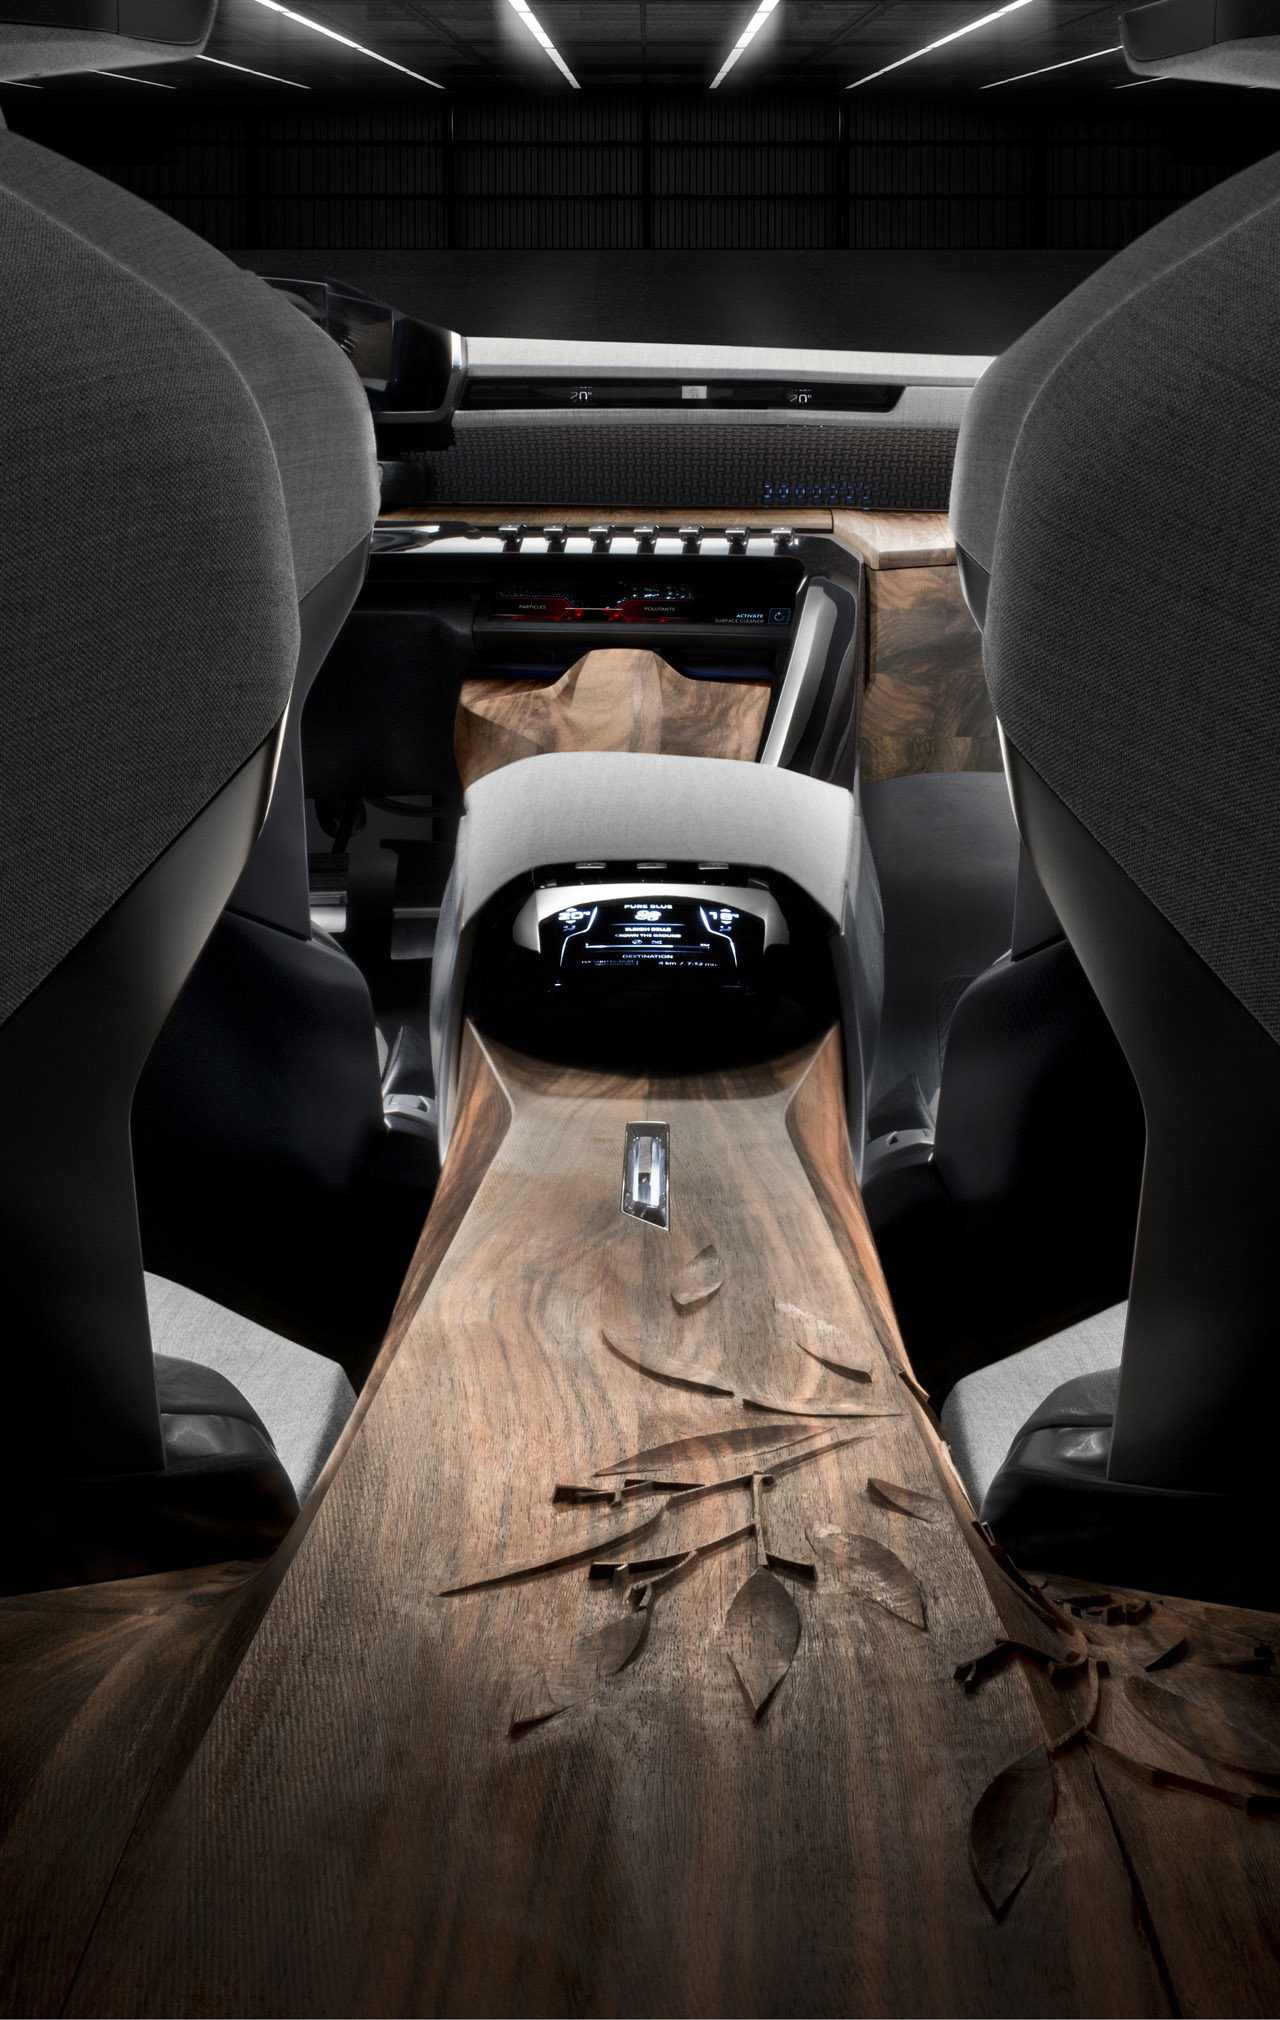 Peugeot Exalt, 2014 - Interior